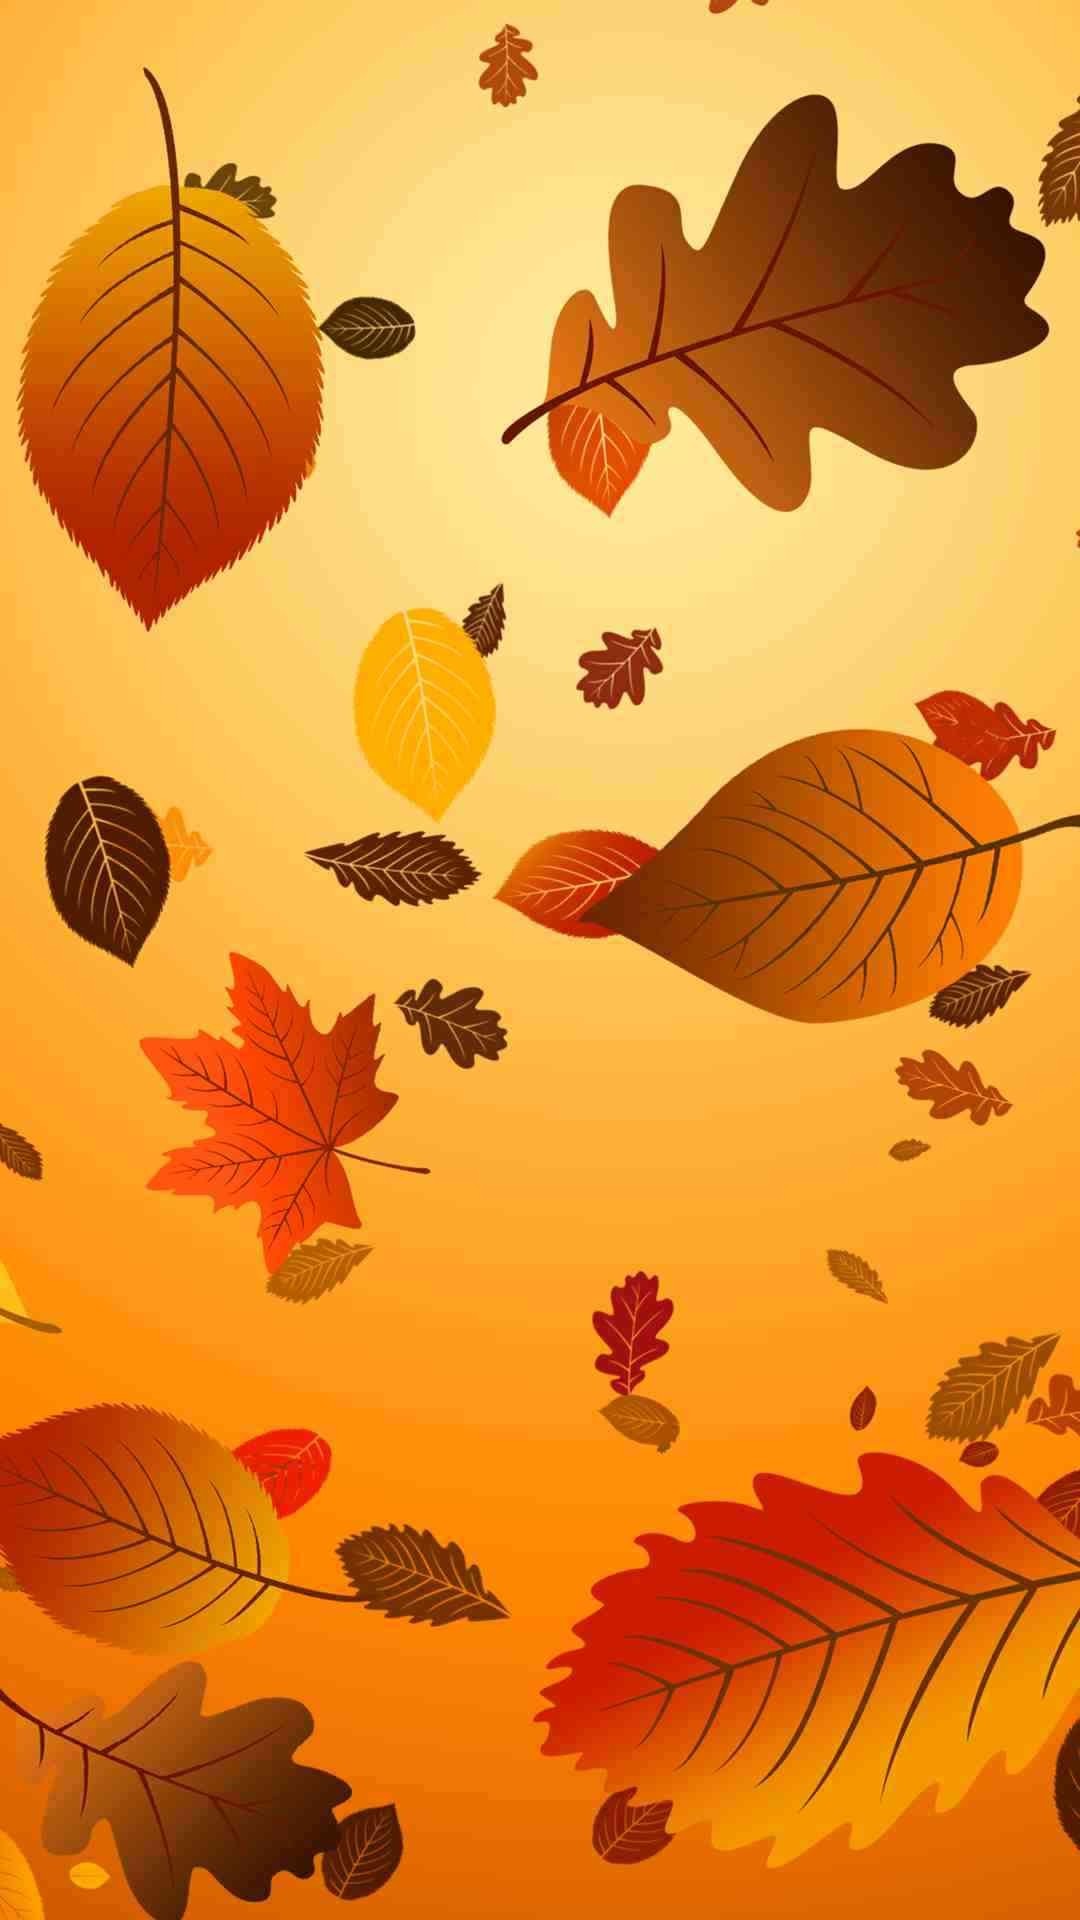 acción de gracias fondos de pantalla iphone,hoja,naranja,amarillo,otoño,árbol